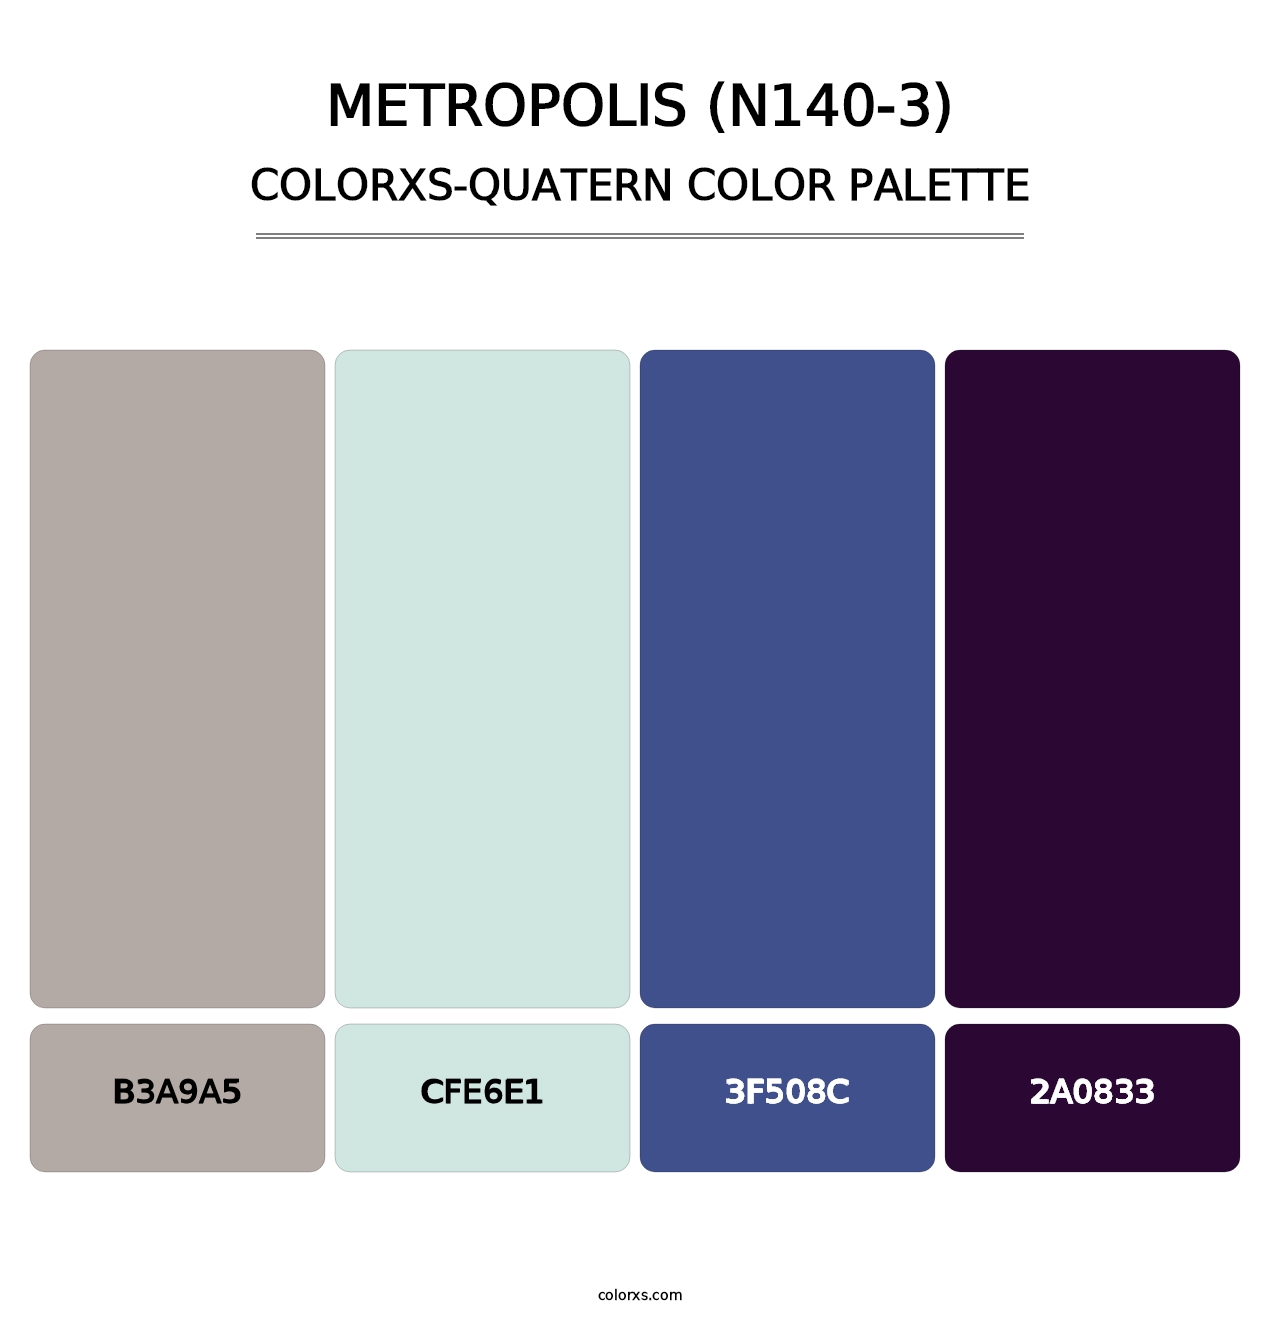 Metropolis (N140-3) - Colorxs Quatern Palette